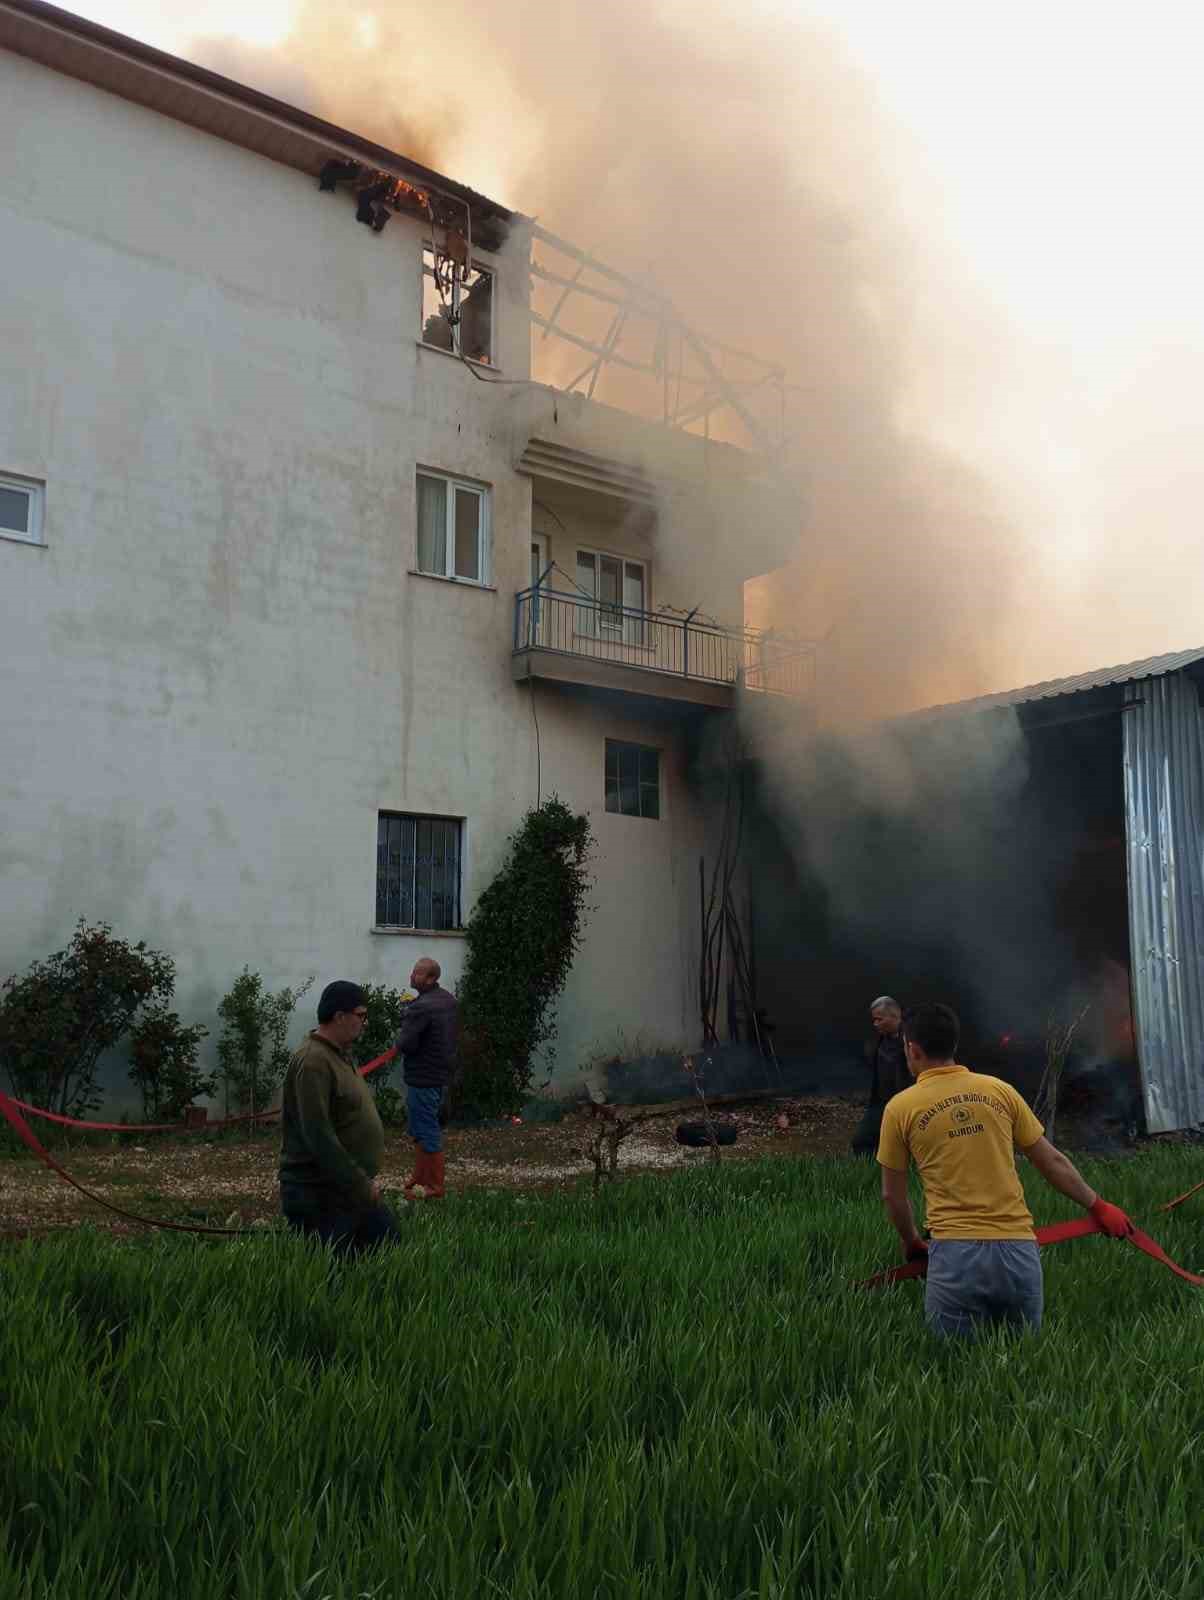 Burdur’da samanlıkta başlayan yangın eve sıçradı, büyük çapta maddi hasar meydana geldi
